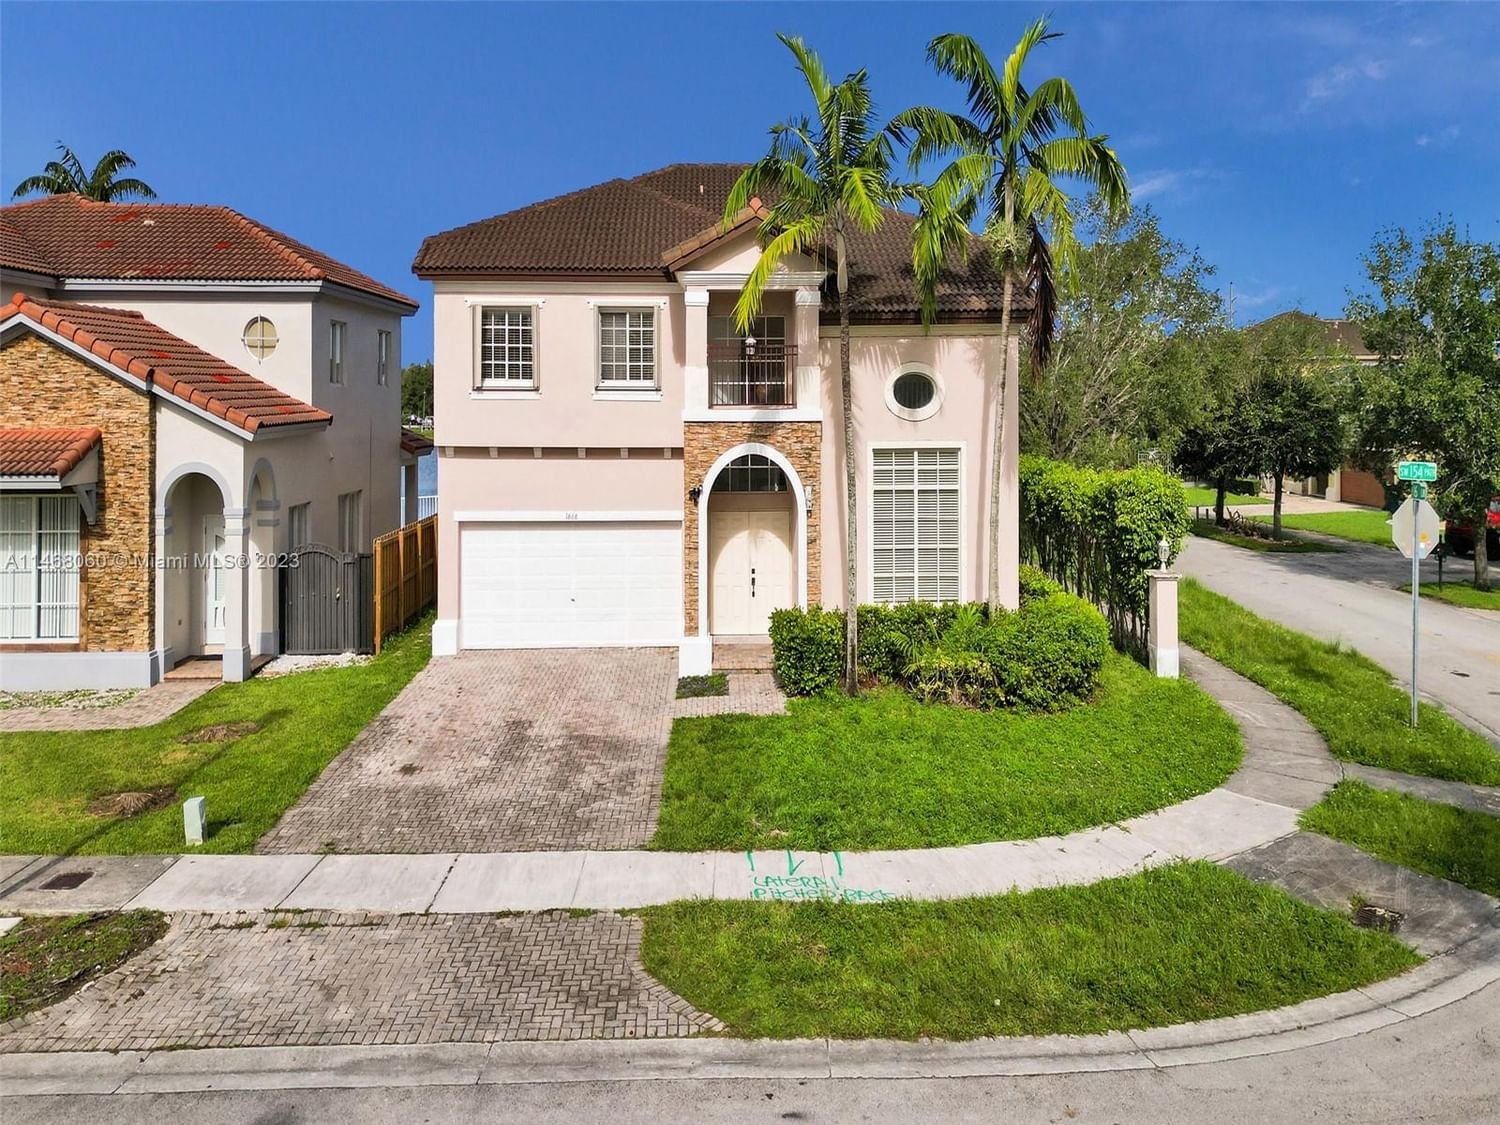 Real estate property located at 1666 154th Path, Miami-Dade County, Miami, FL